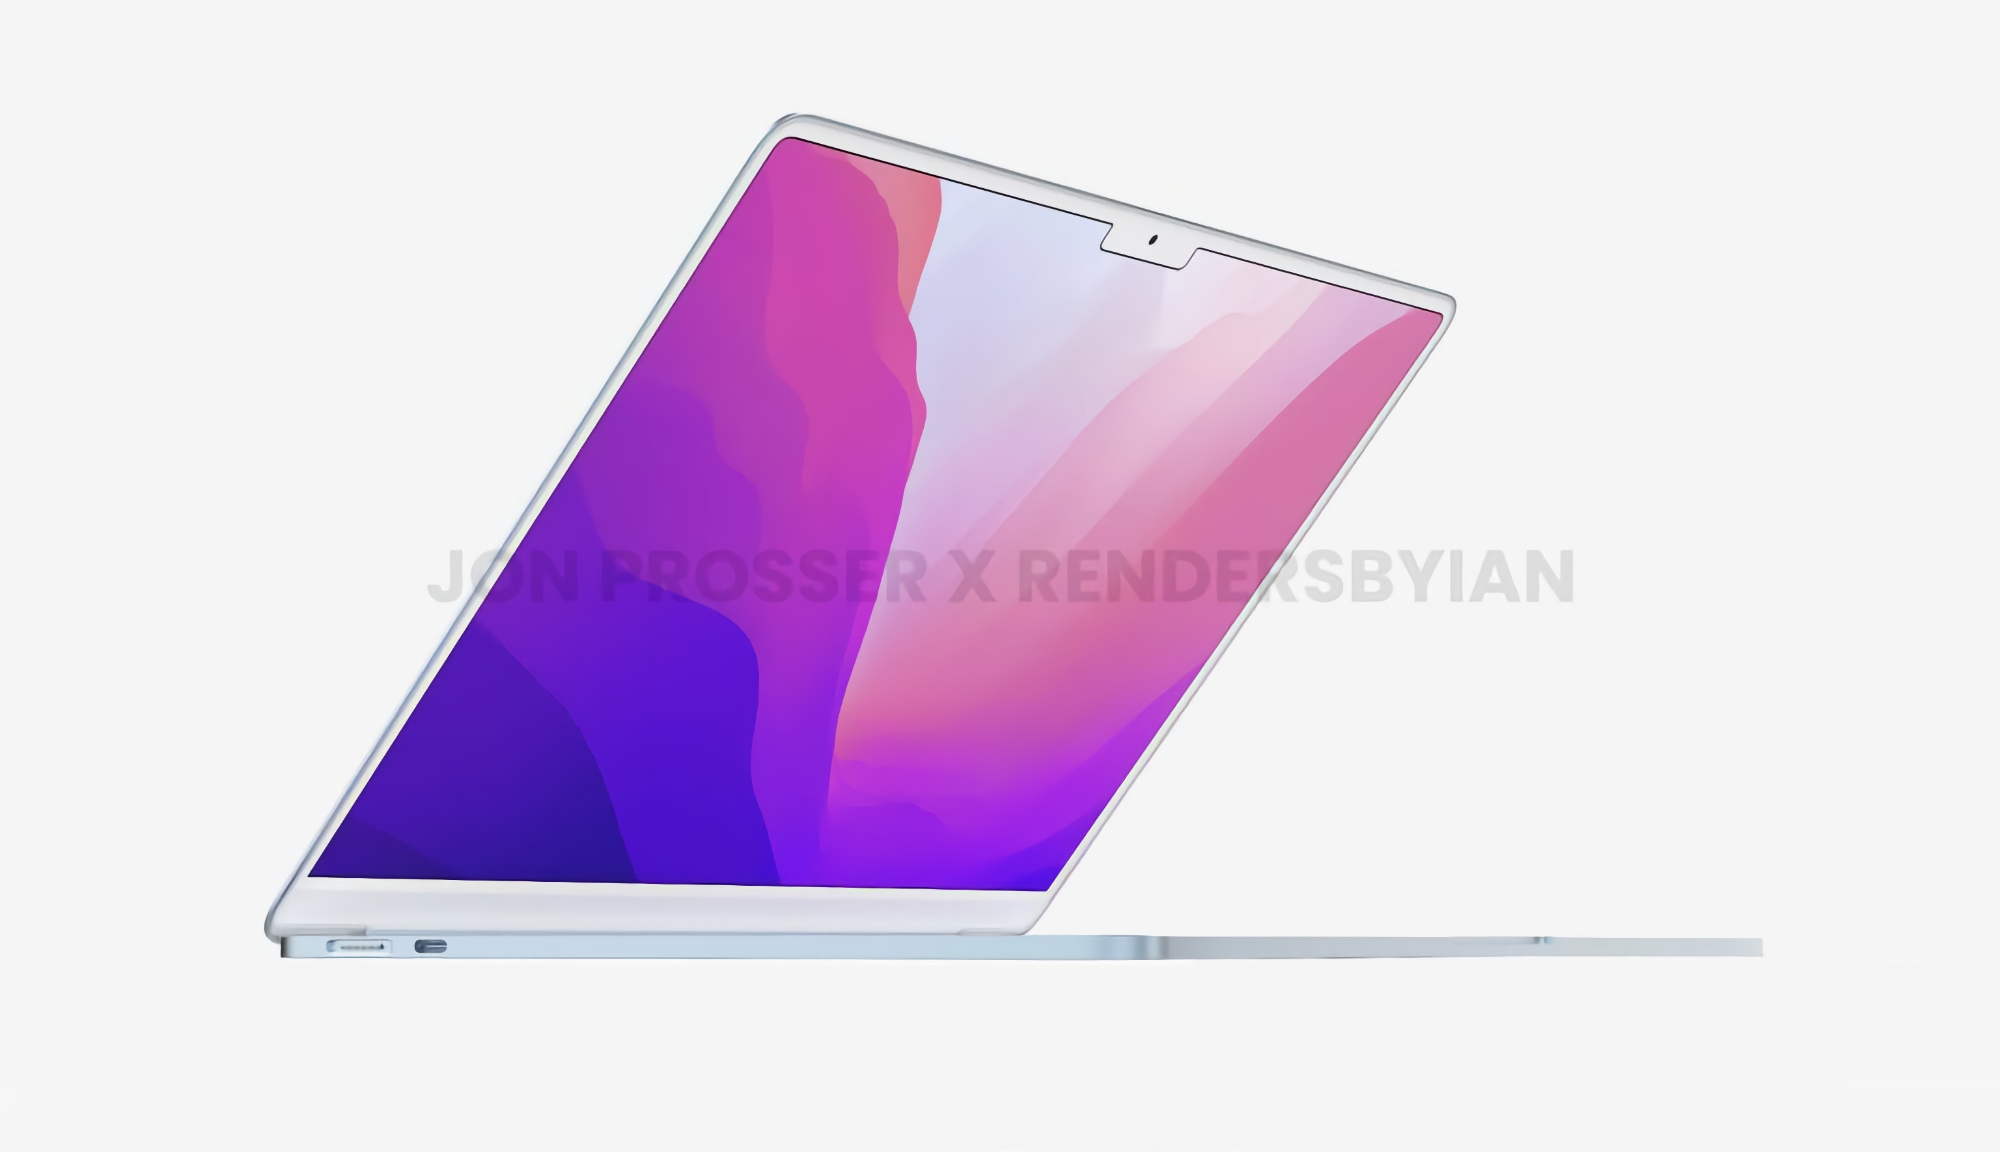 John Prosser révèle le design du nouveau MacBook Air avec un cadre blanc autour de l'écran et des "franges" comme le MacBook Pro et l'iPhone